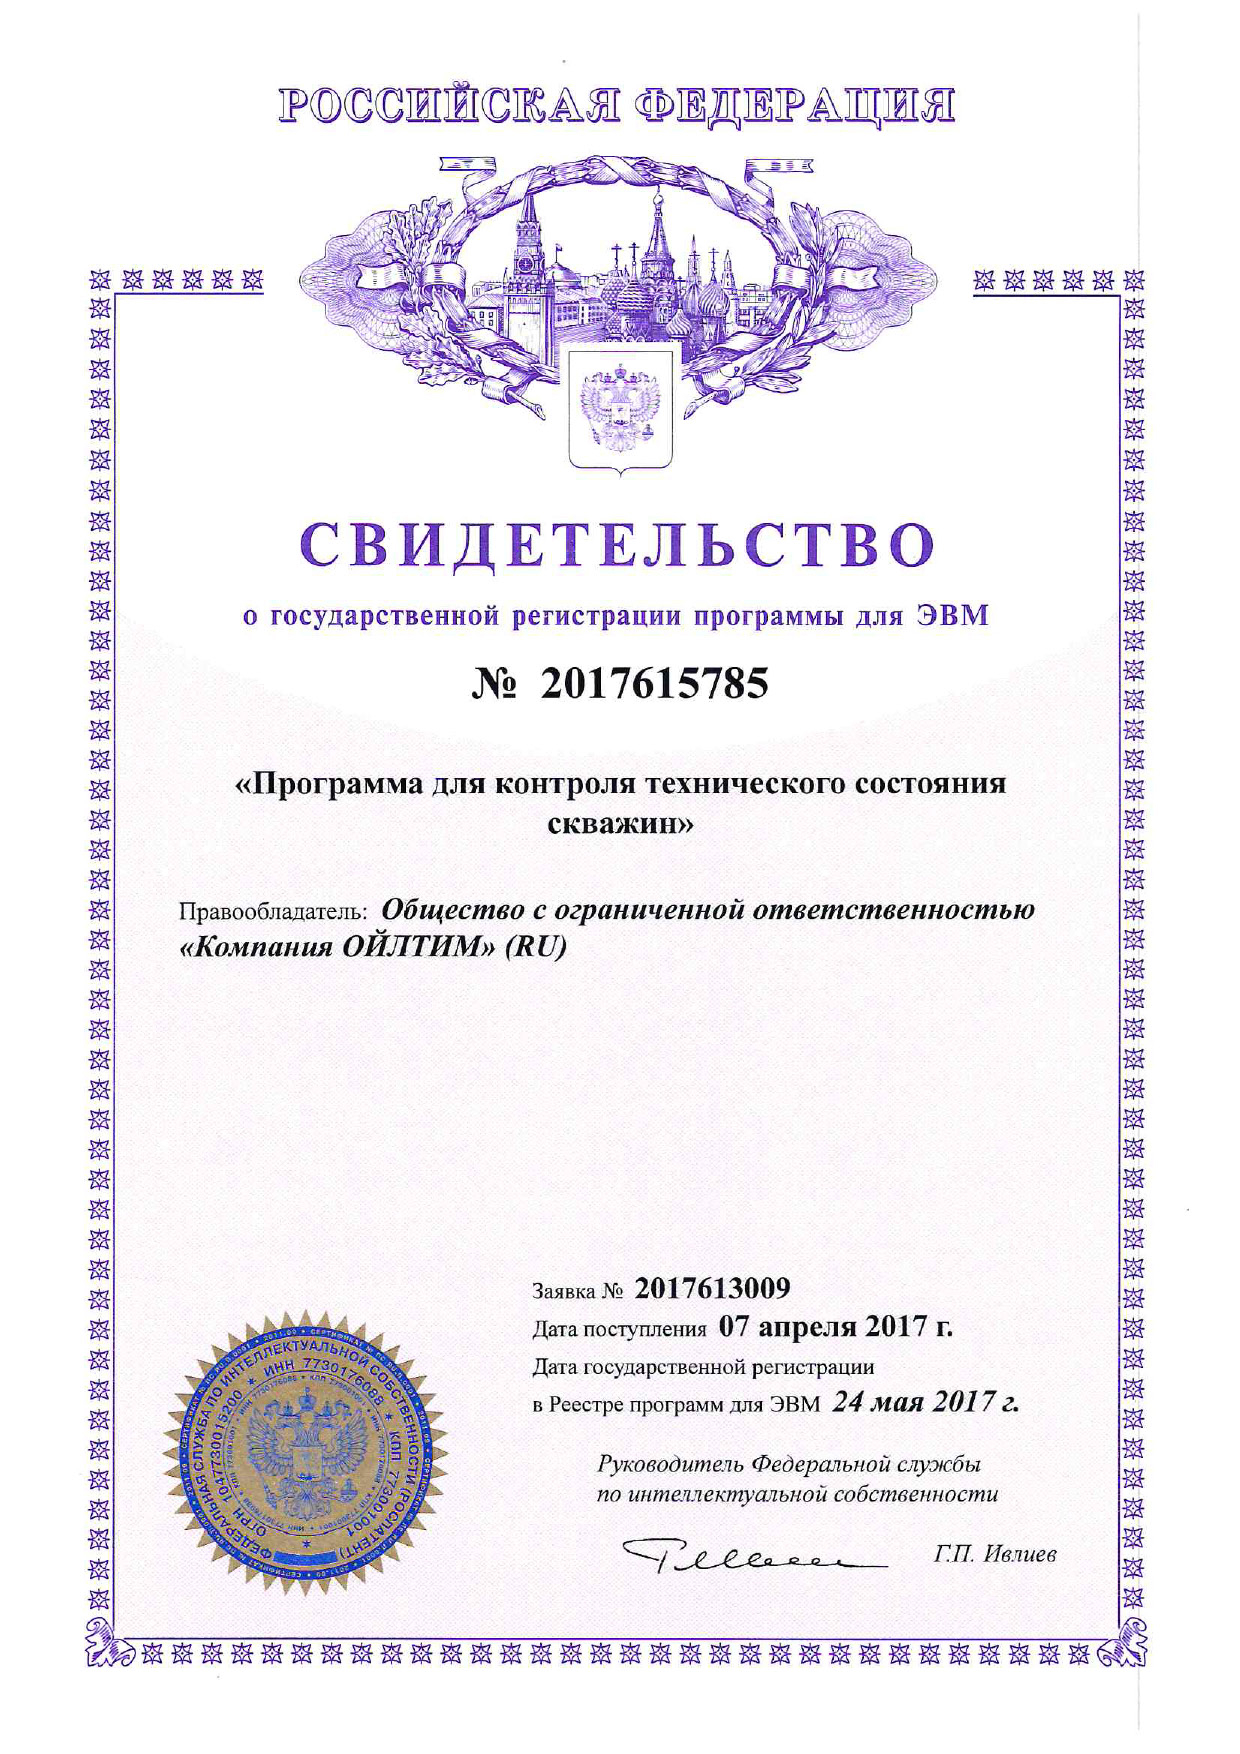 Свидетельство о государственной регистрации программы для ЭВМ. Программа для контроля технического состояния скважин